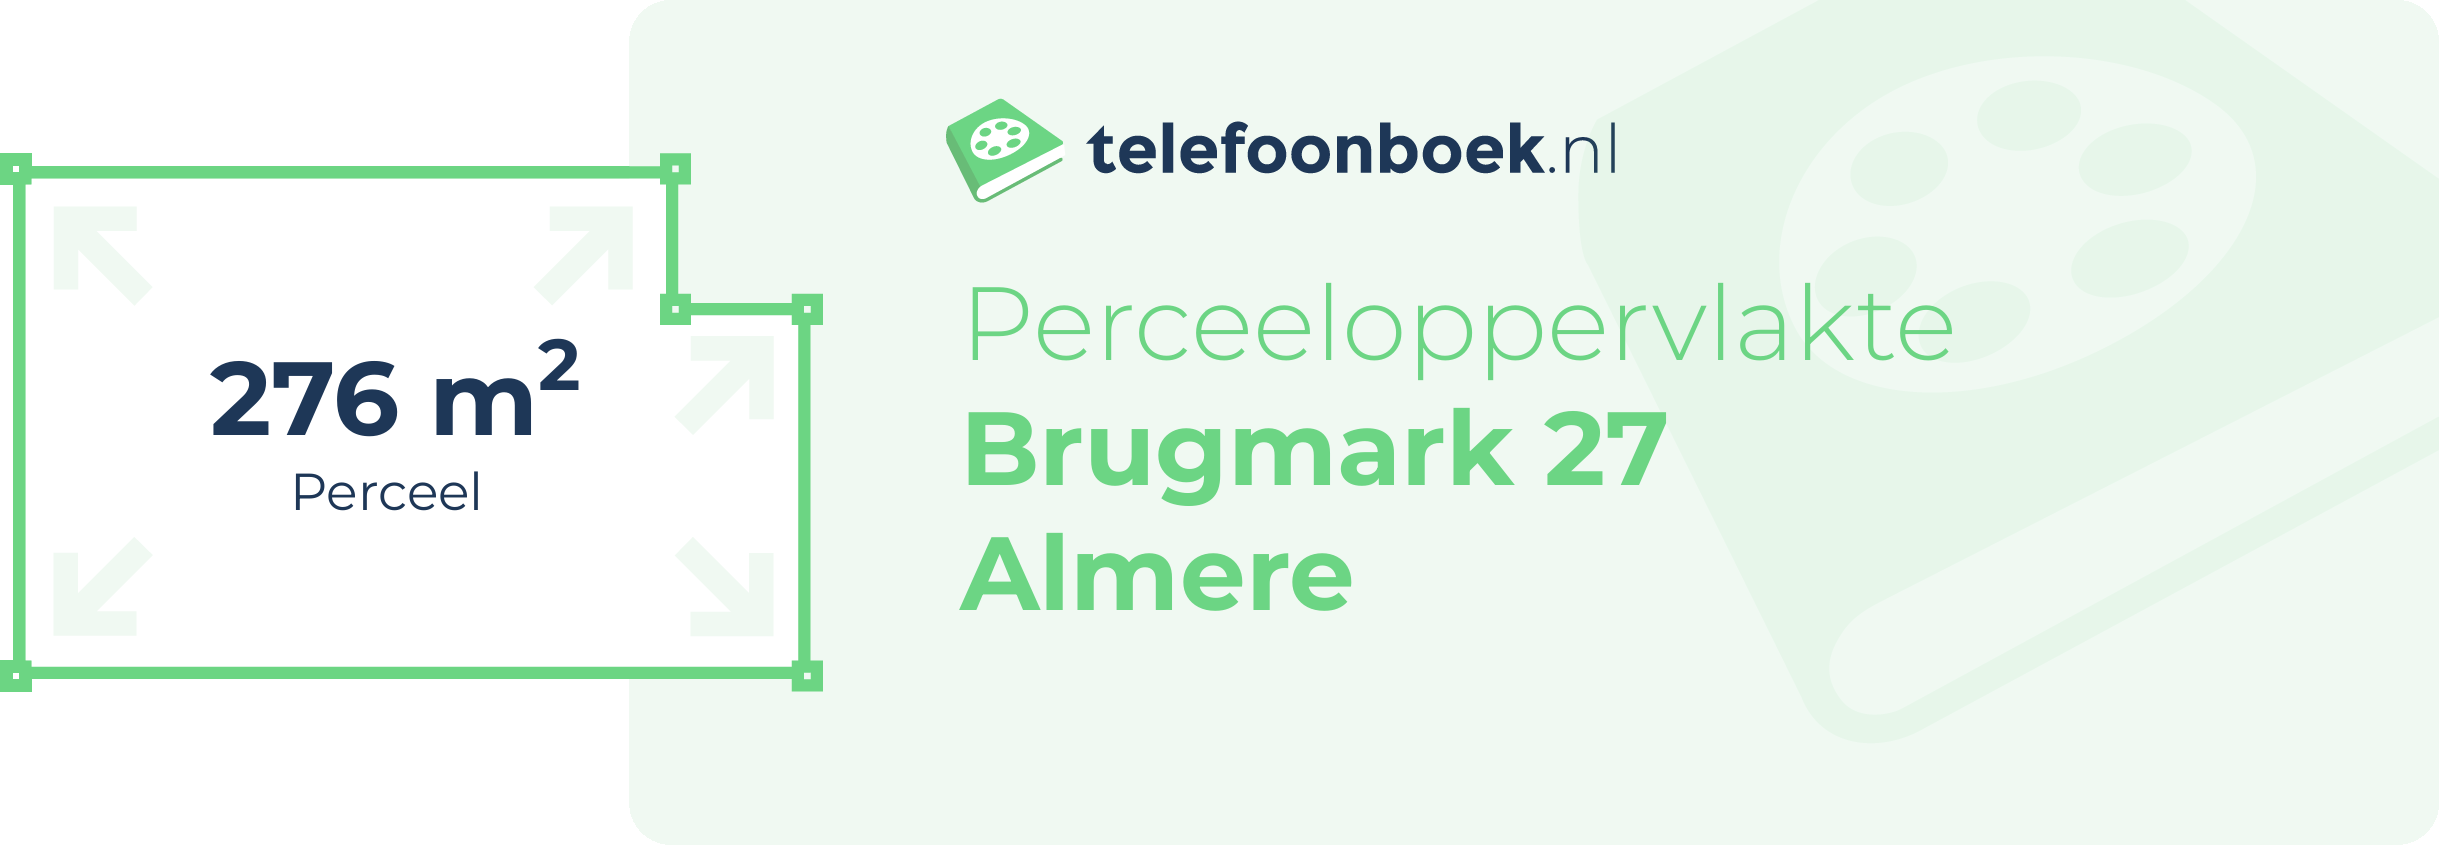 Perceeloppervlakte Brugmark 27 Almere